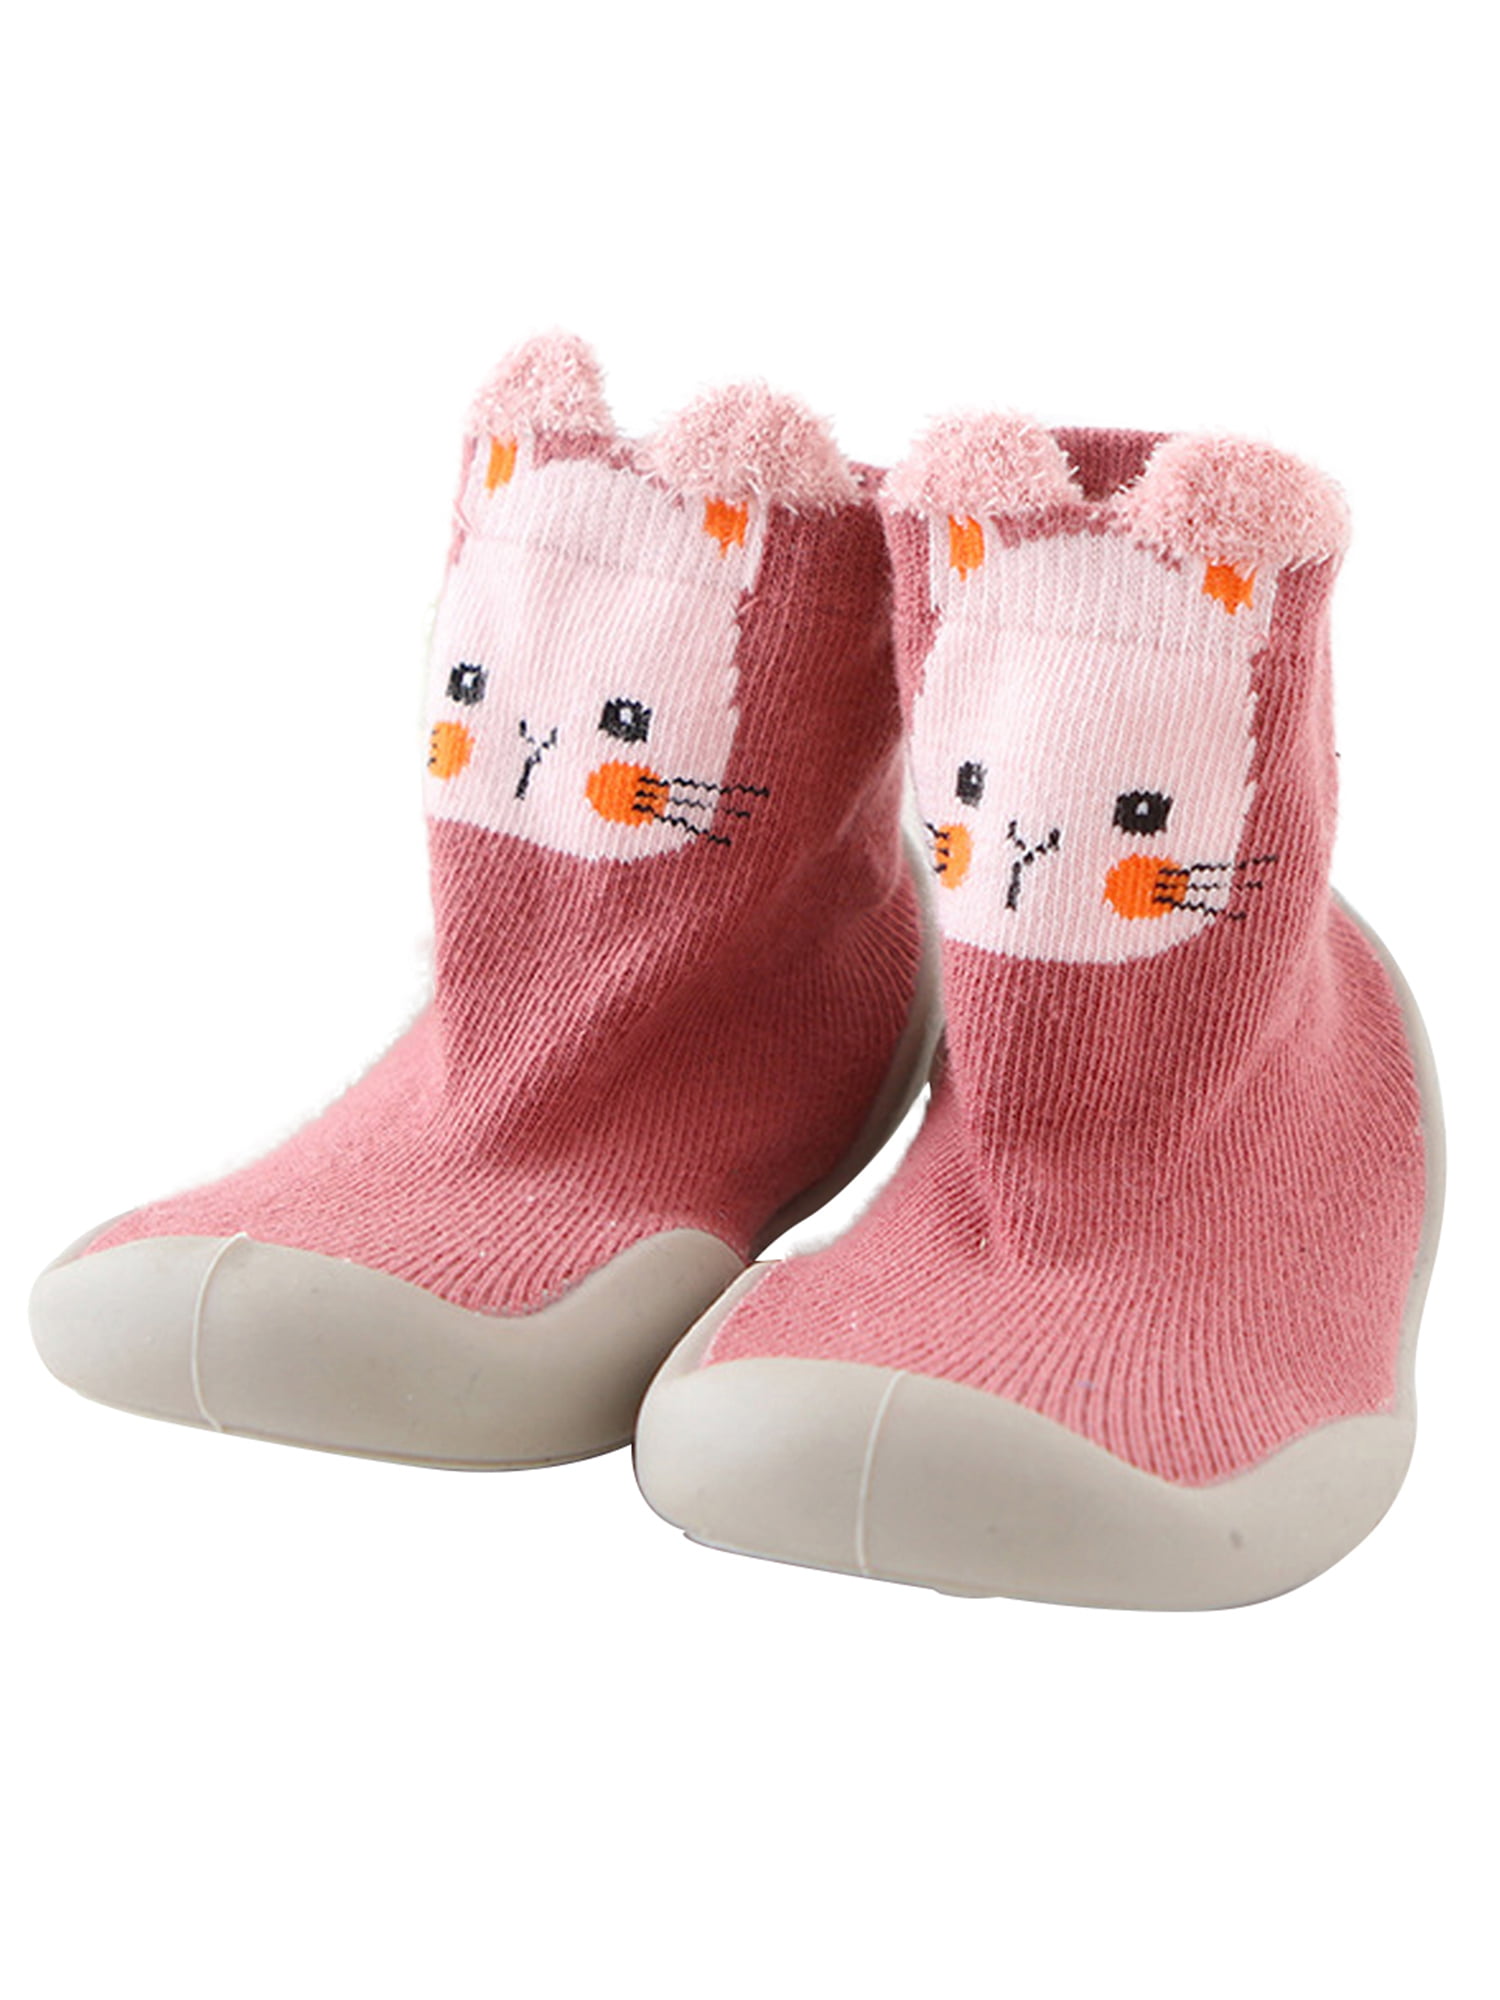 Kids Baby Girl Boys Toddler Anti-slip Slippers Floor Socks Winter Warm Shoes 